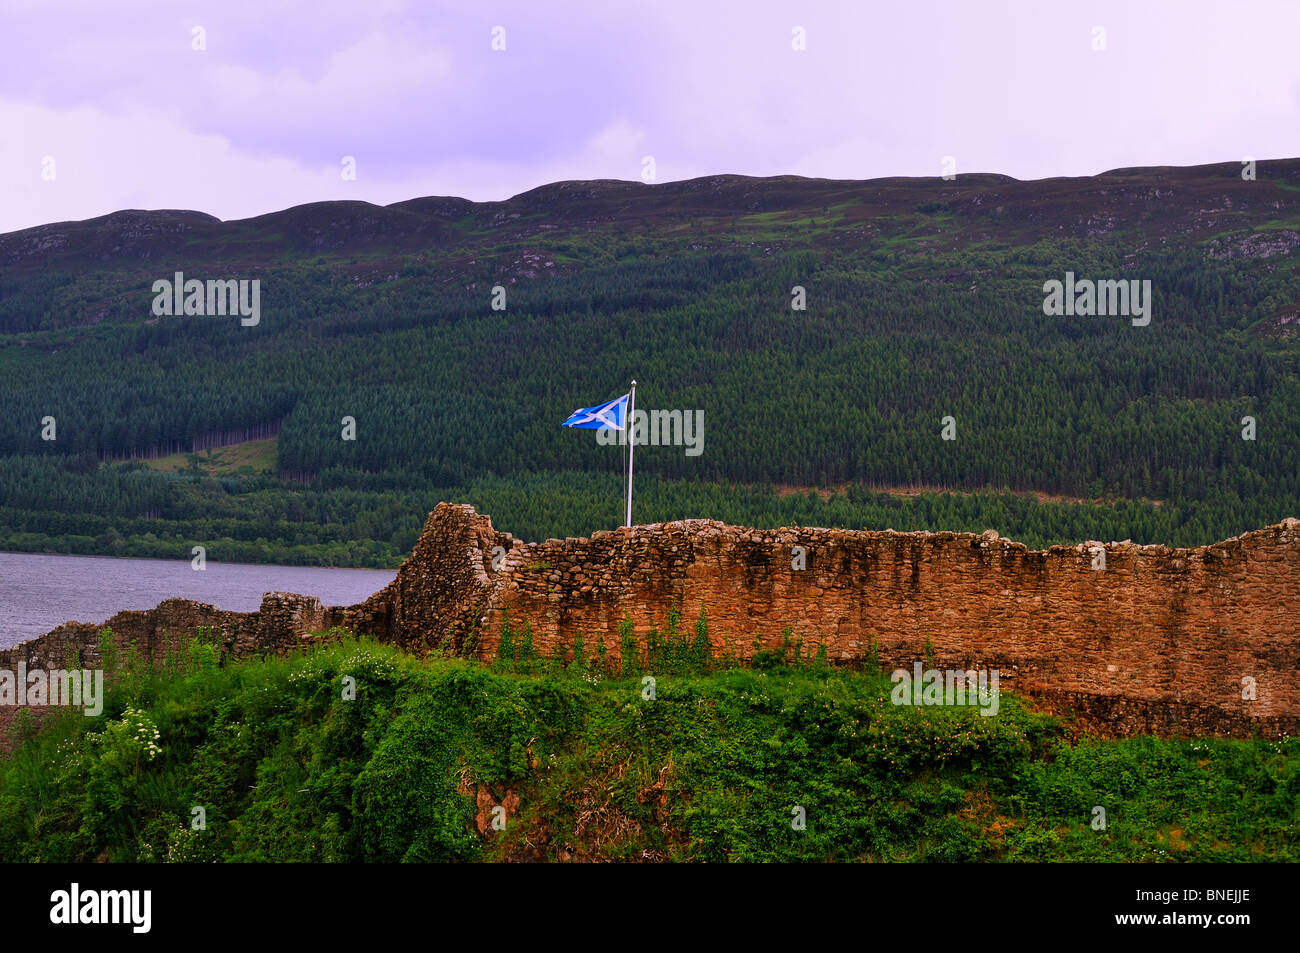 La bandiera scozzese, (una si intraversa, Saint Andrew's Cross, O crux decussata) vola sopra le rovine del castello di Urquhart Da Loch Ness Foto Stock